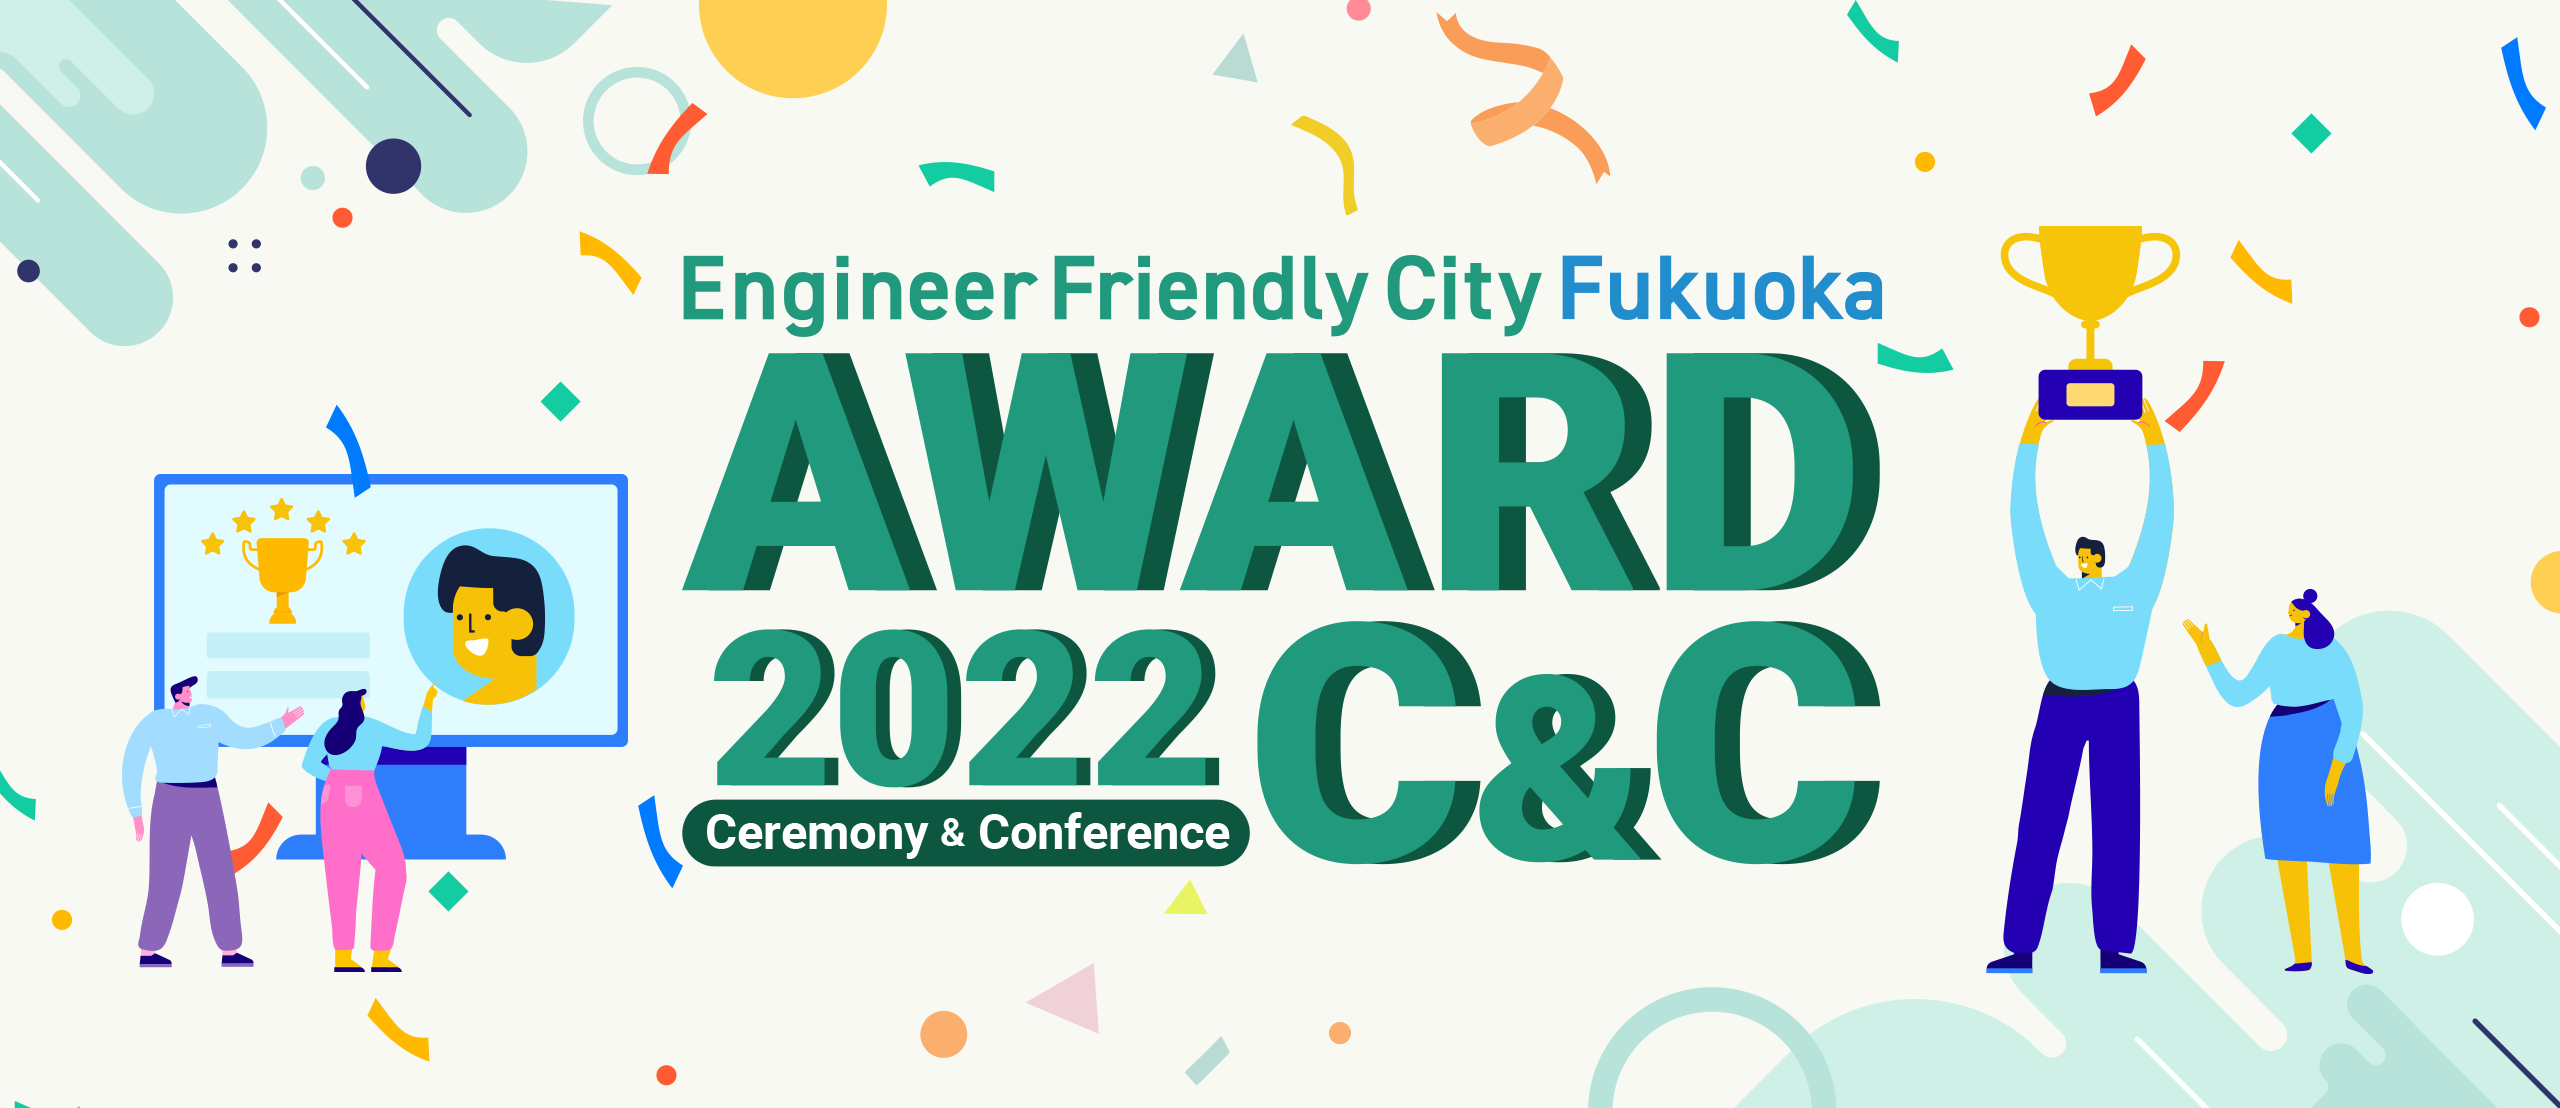 Engineer Friendly City Fukuoka AWARD 2022
Ceremony & Conference